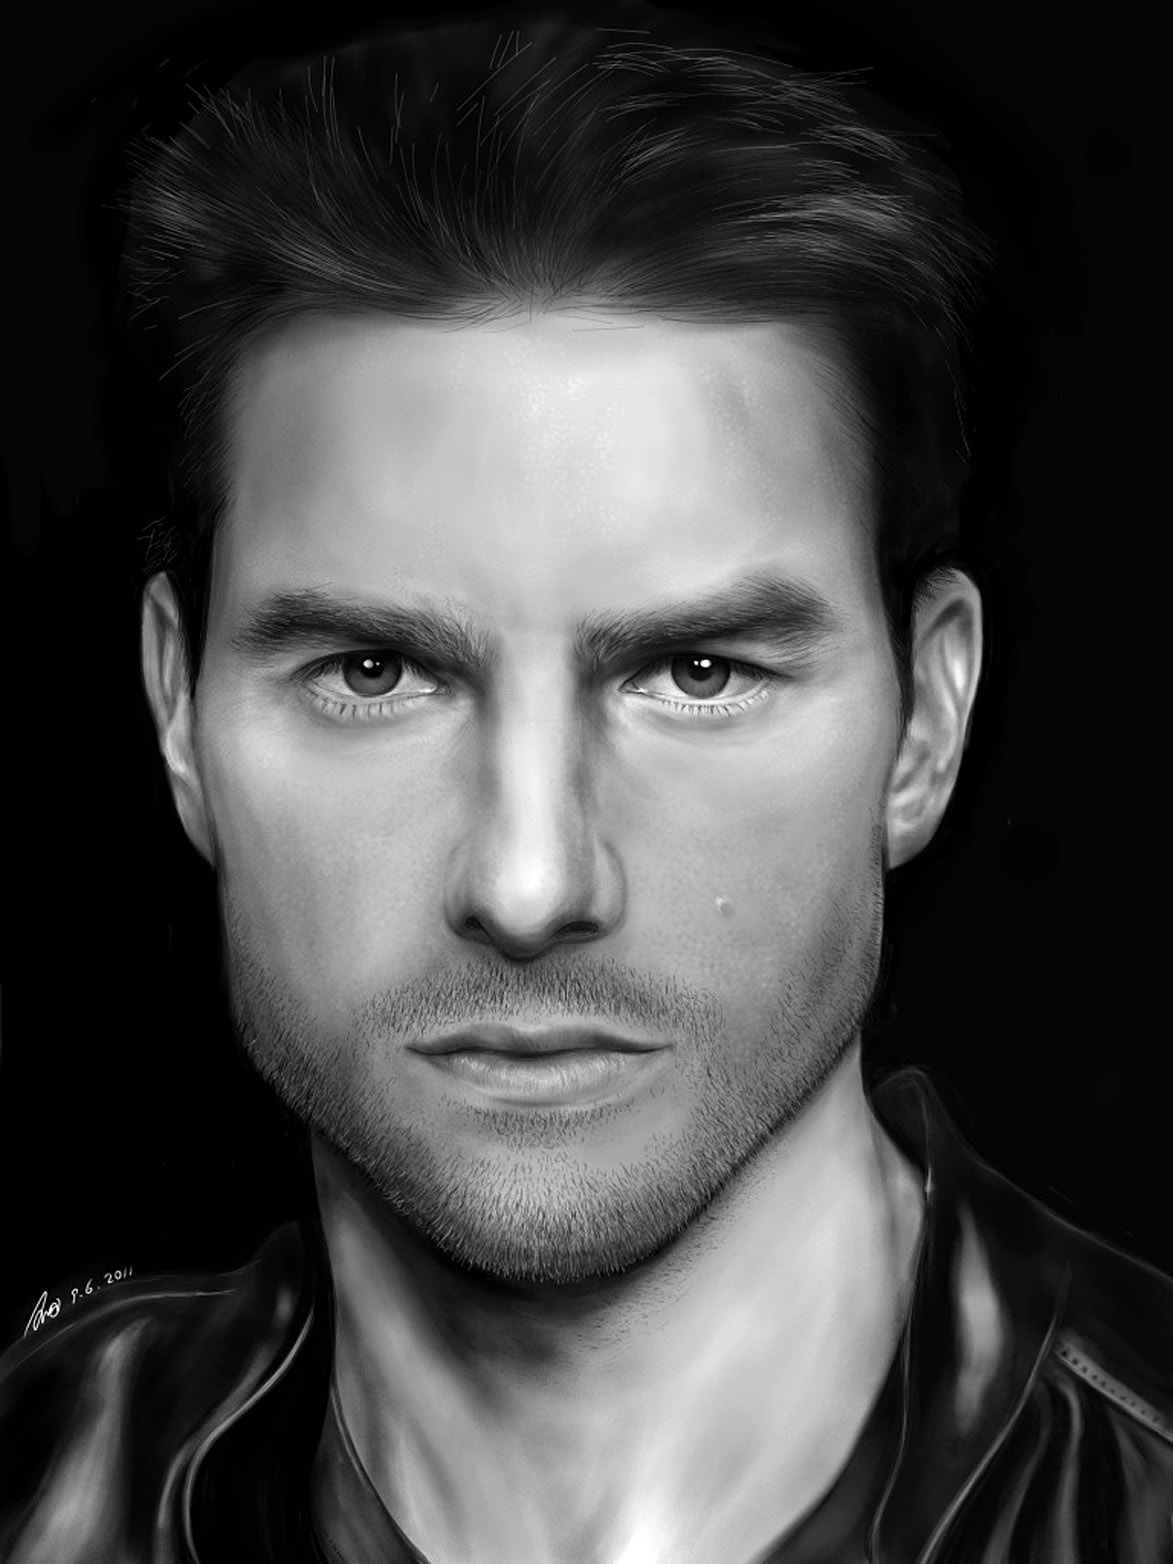 Tom Cruise Drawing Amazing